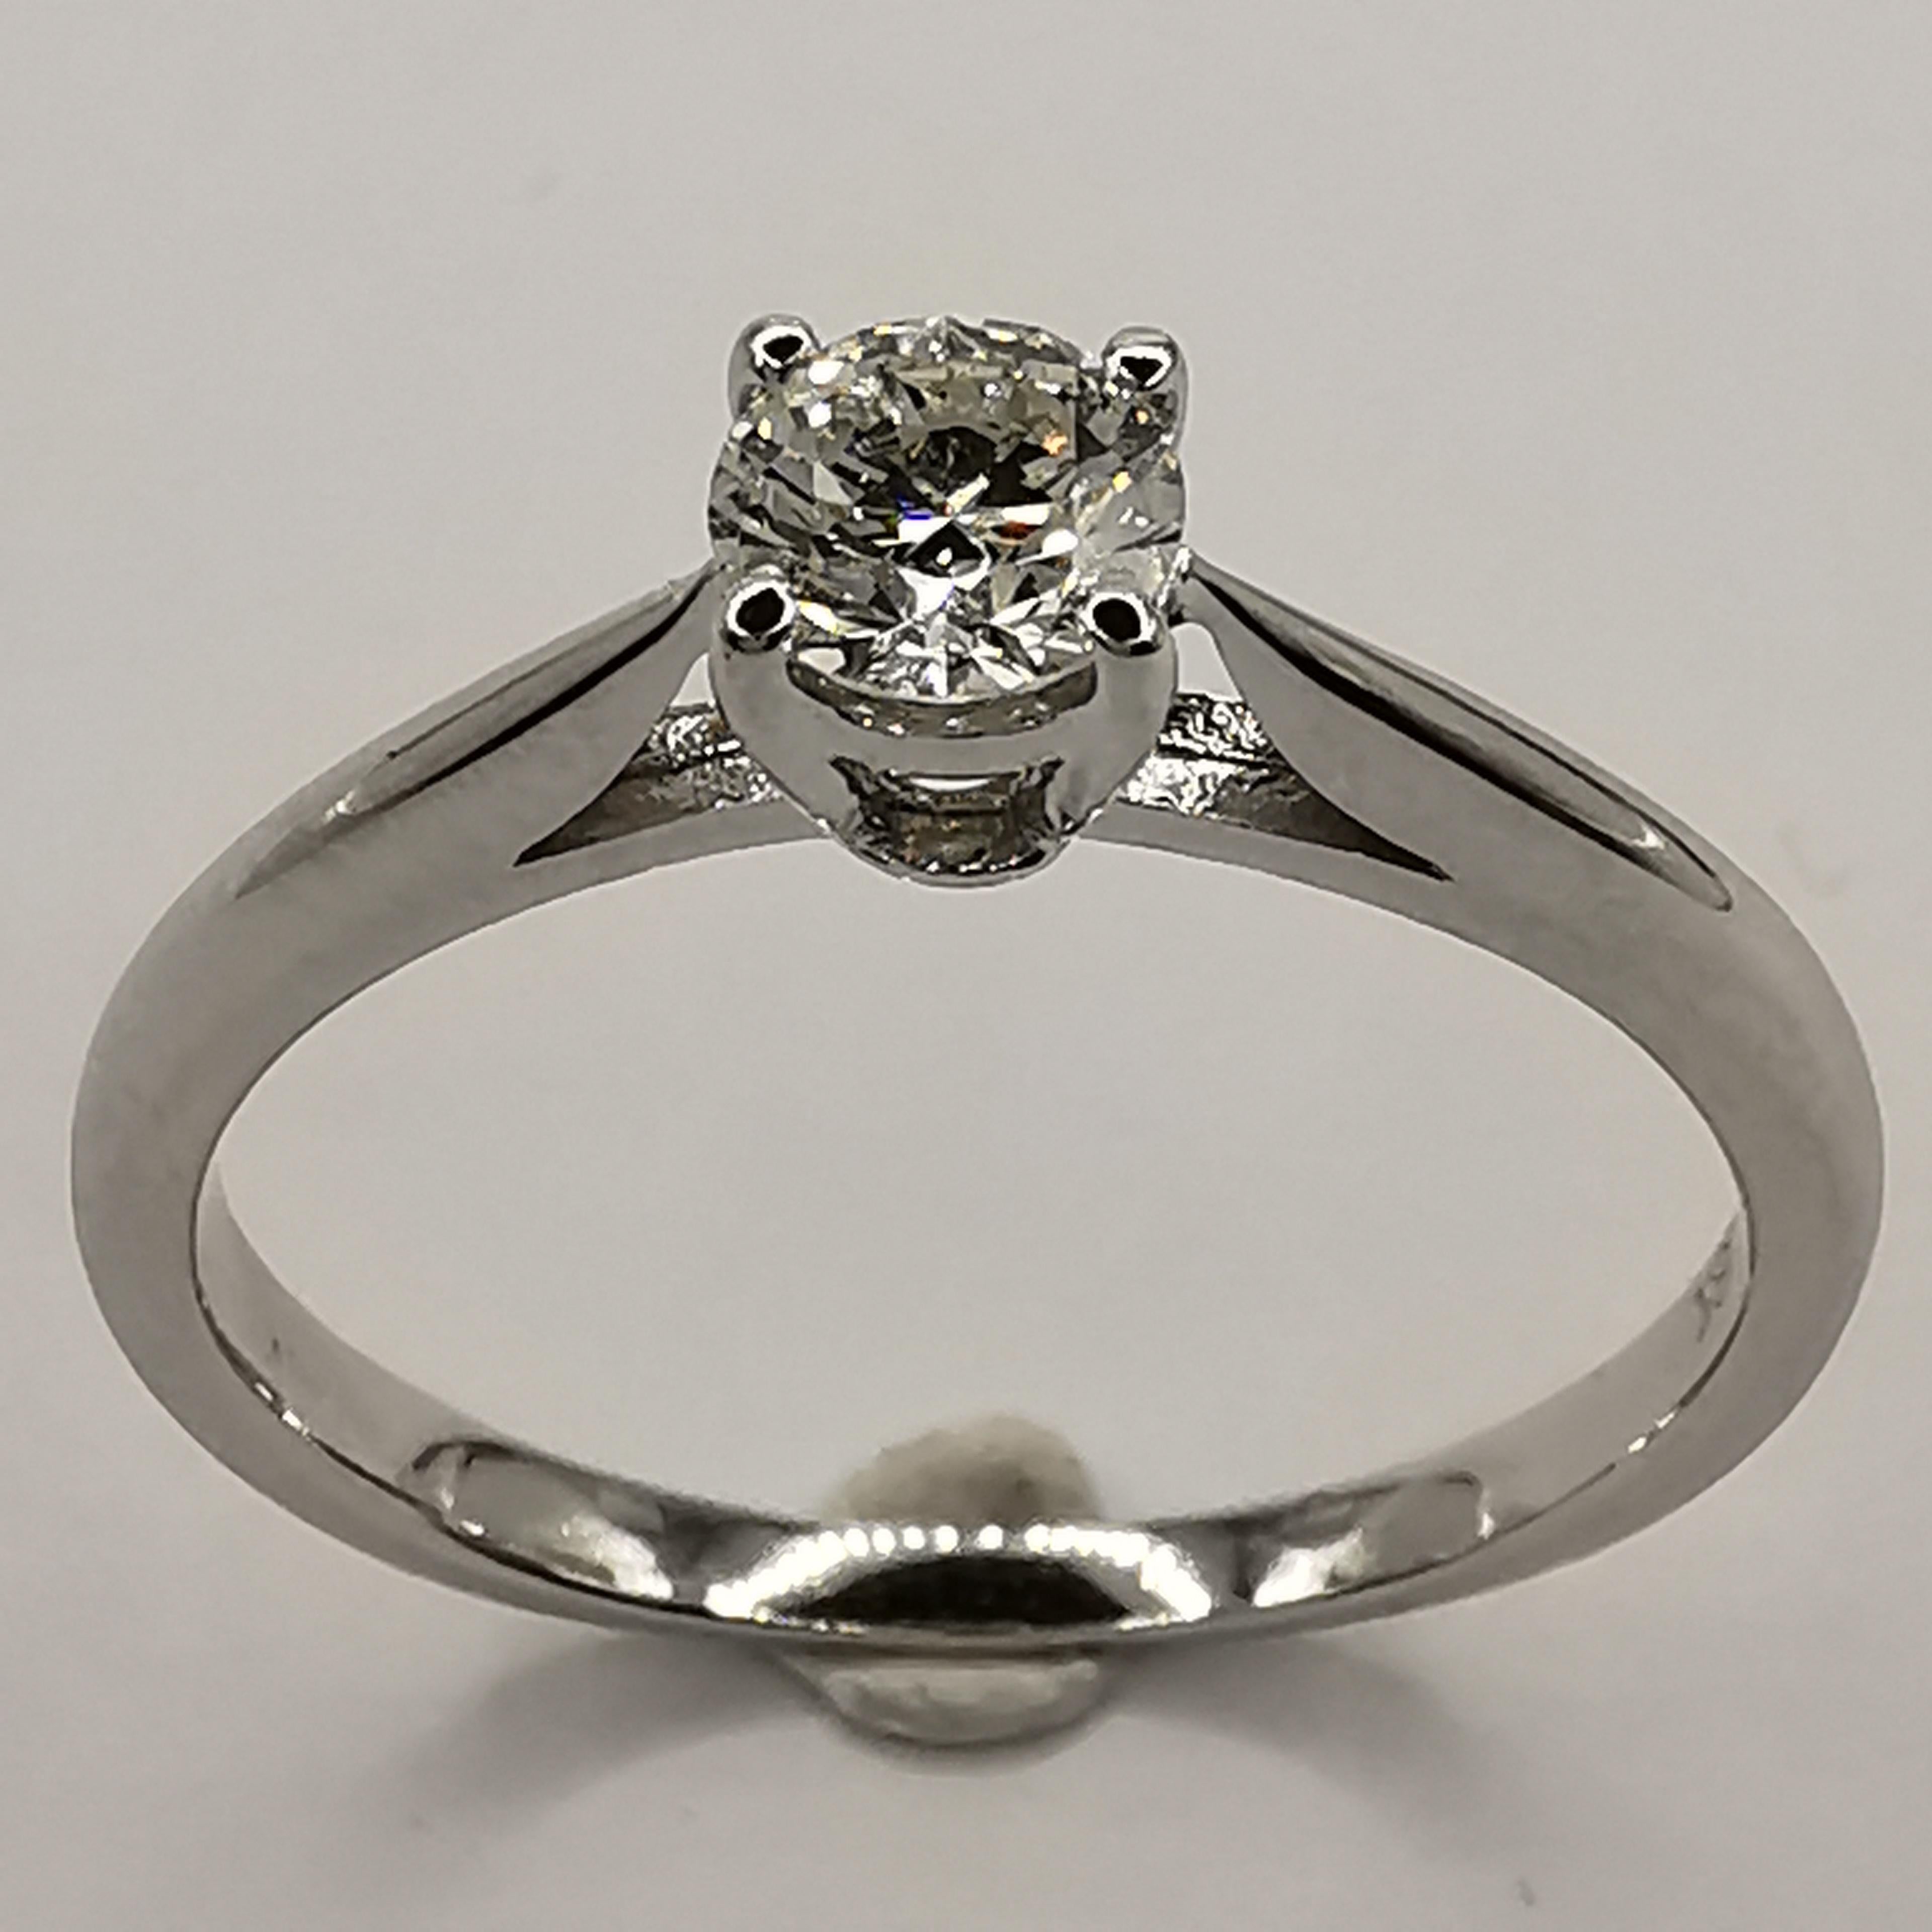 Cette bague de fiançailles en diamant solitaire, élégante et moderne, est le choix idéal pour tous ceux qui recherchent une pièce intemporelle et stylée. La bague est fabriquée en or blanc 18 carats de haute qualité et présente un sertissage